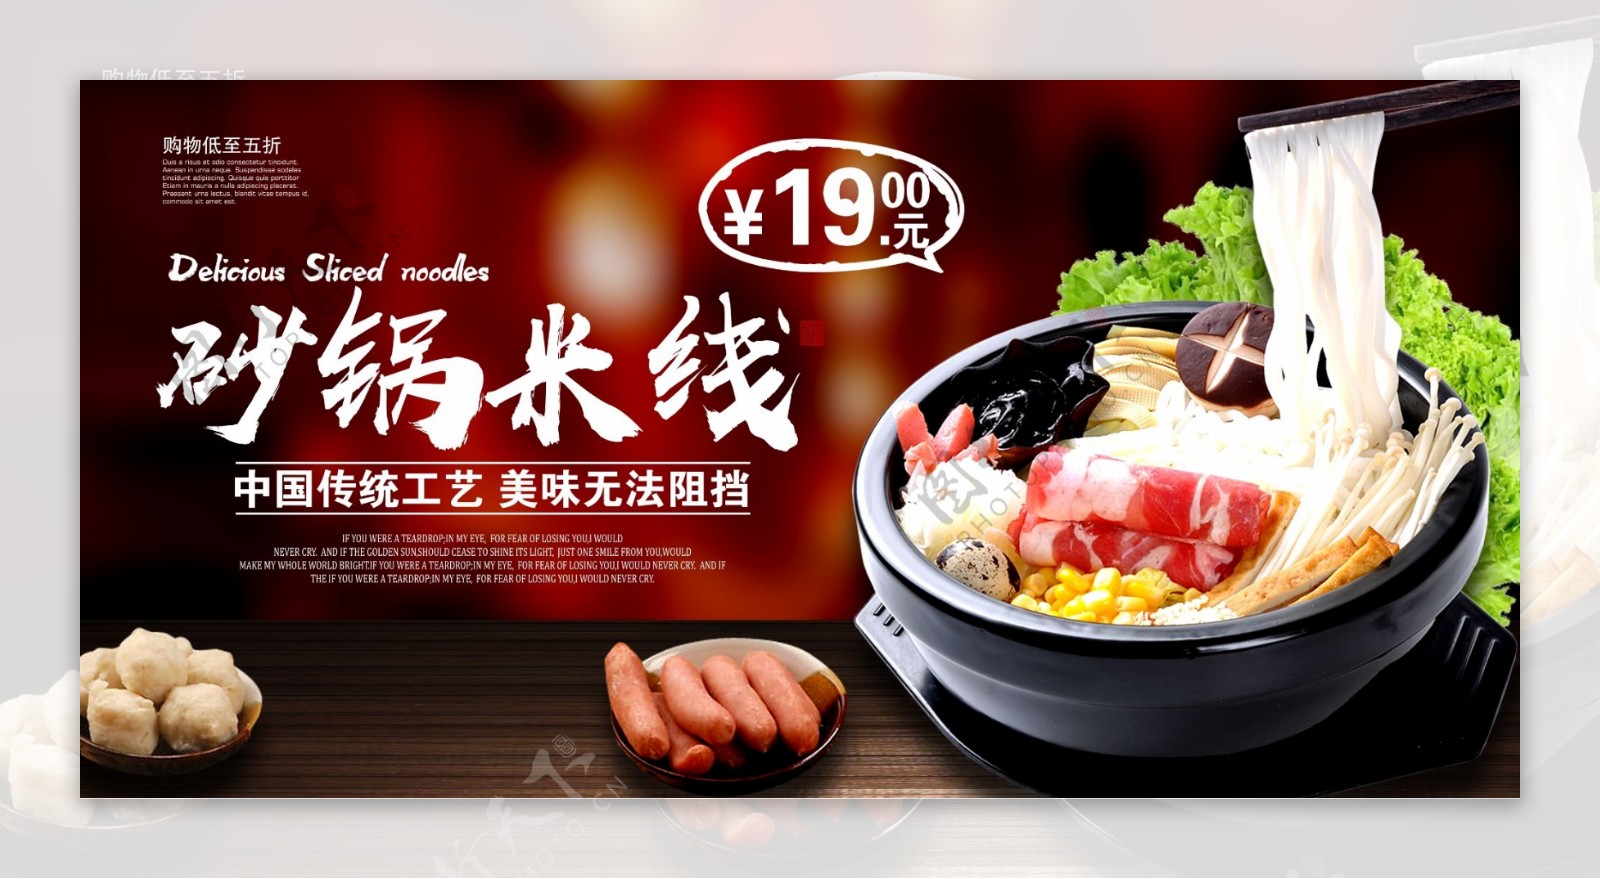 砂锅米线美食活动宣传展板素材